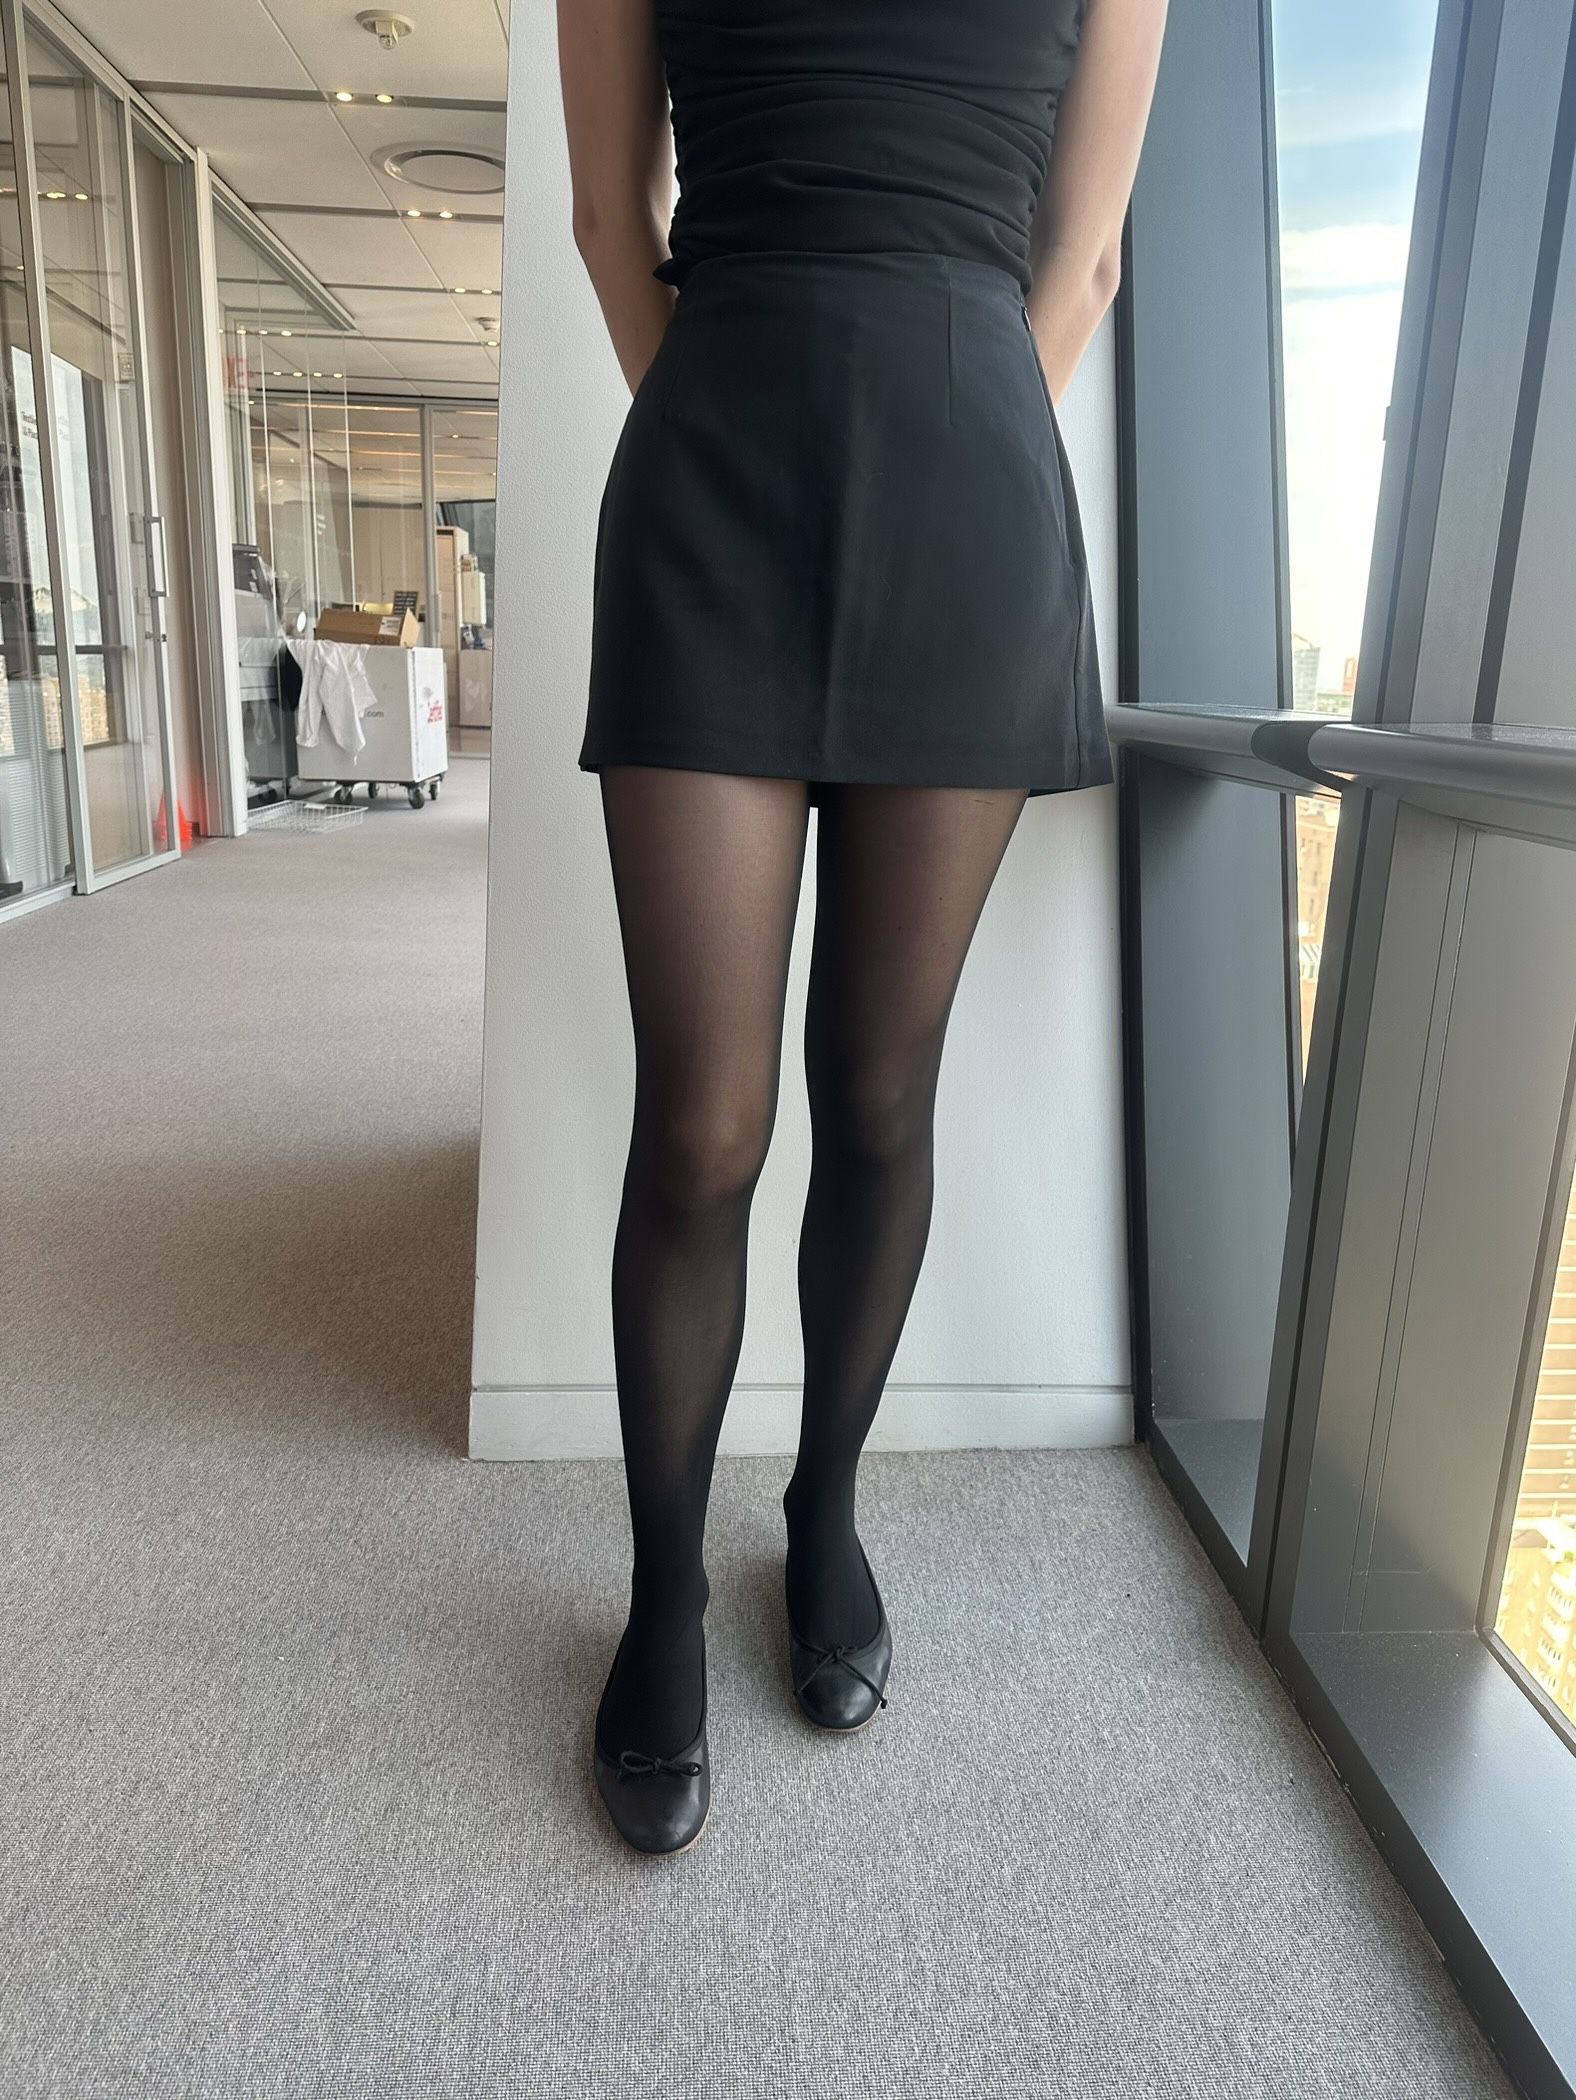 Shorts and tights – Yay or Nay